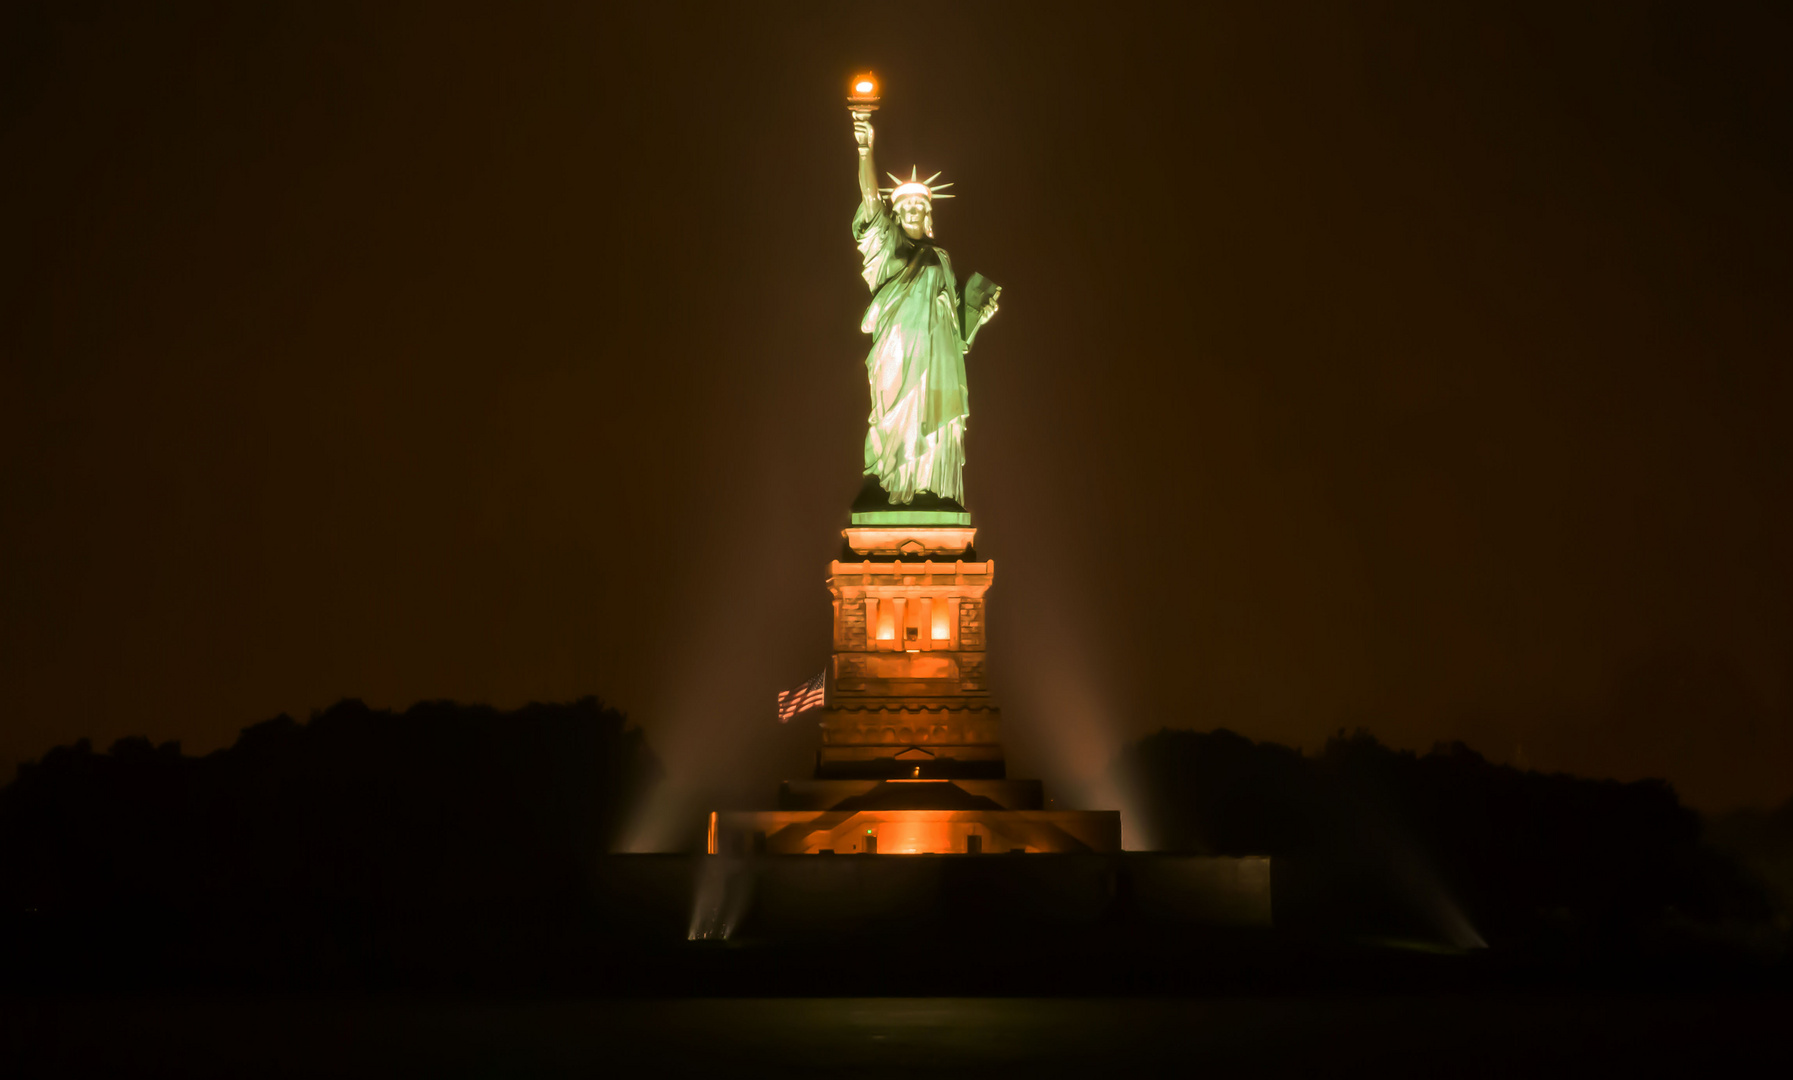 Freiheitsstatue bei Nacht Foto & Bild | north america ...